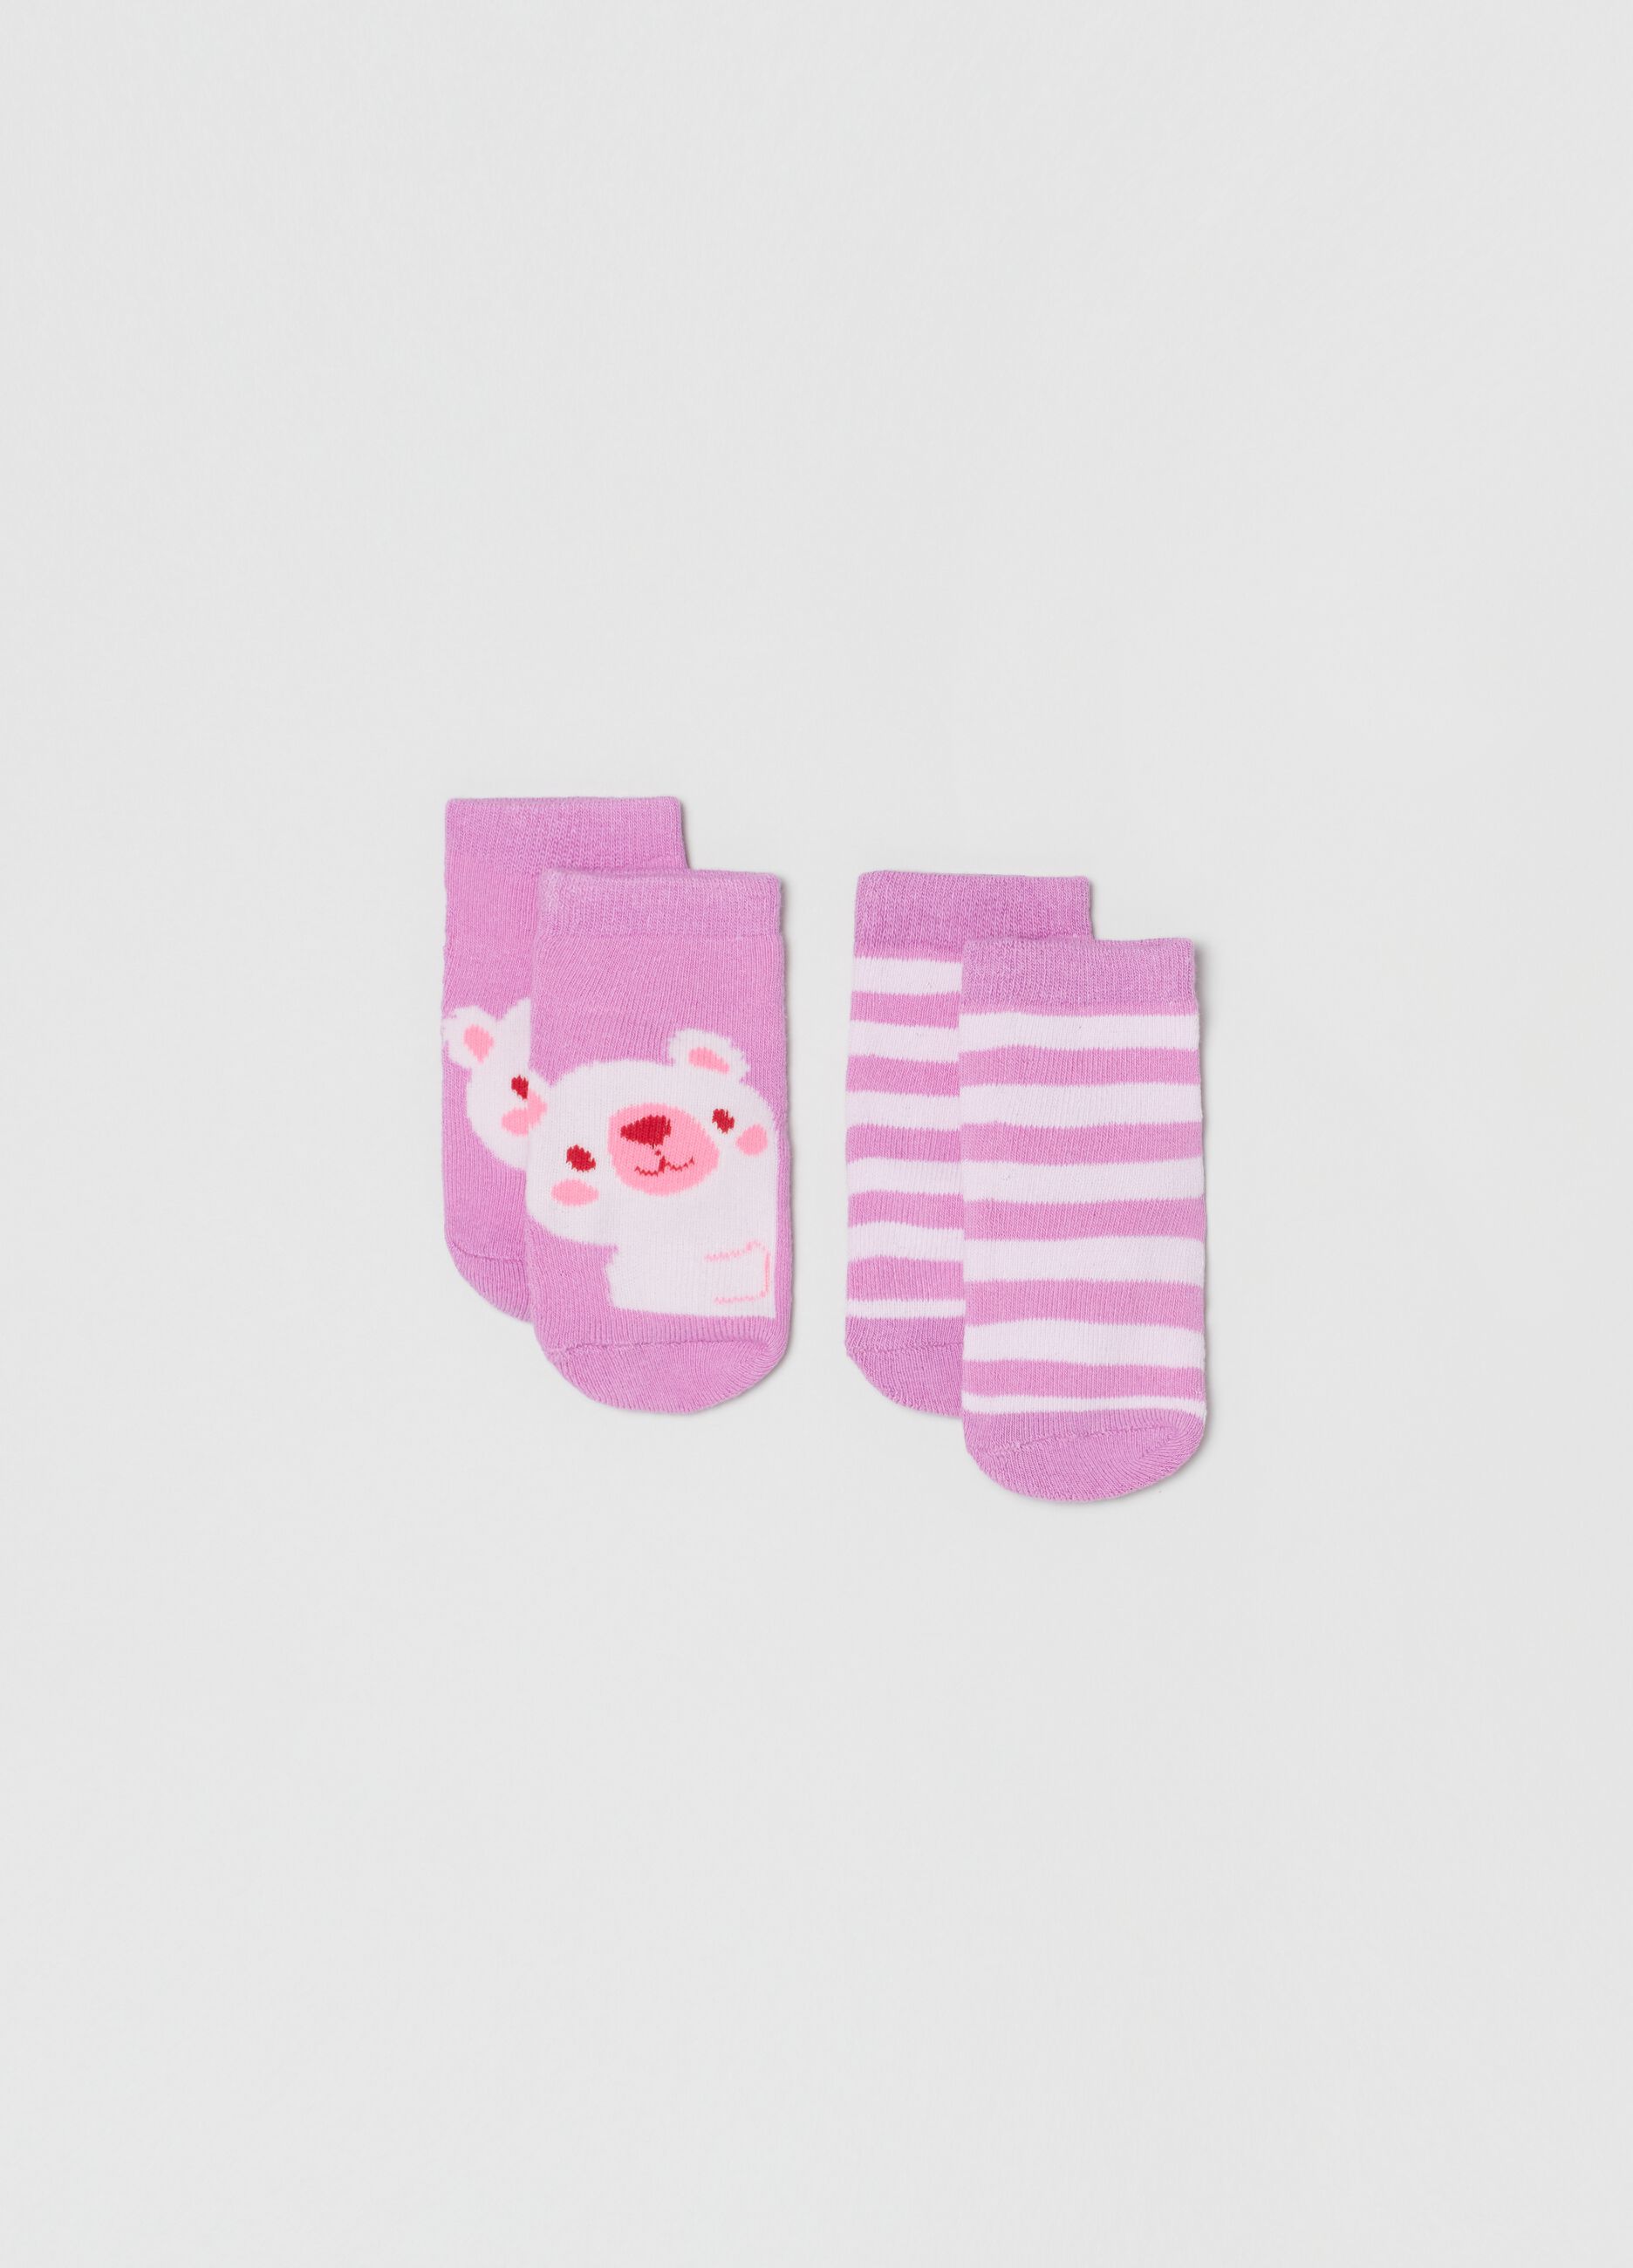 Two-pack slipper socks with koala and stripes design